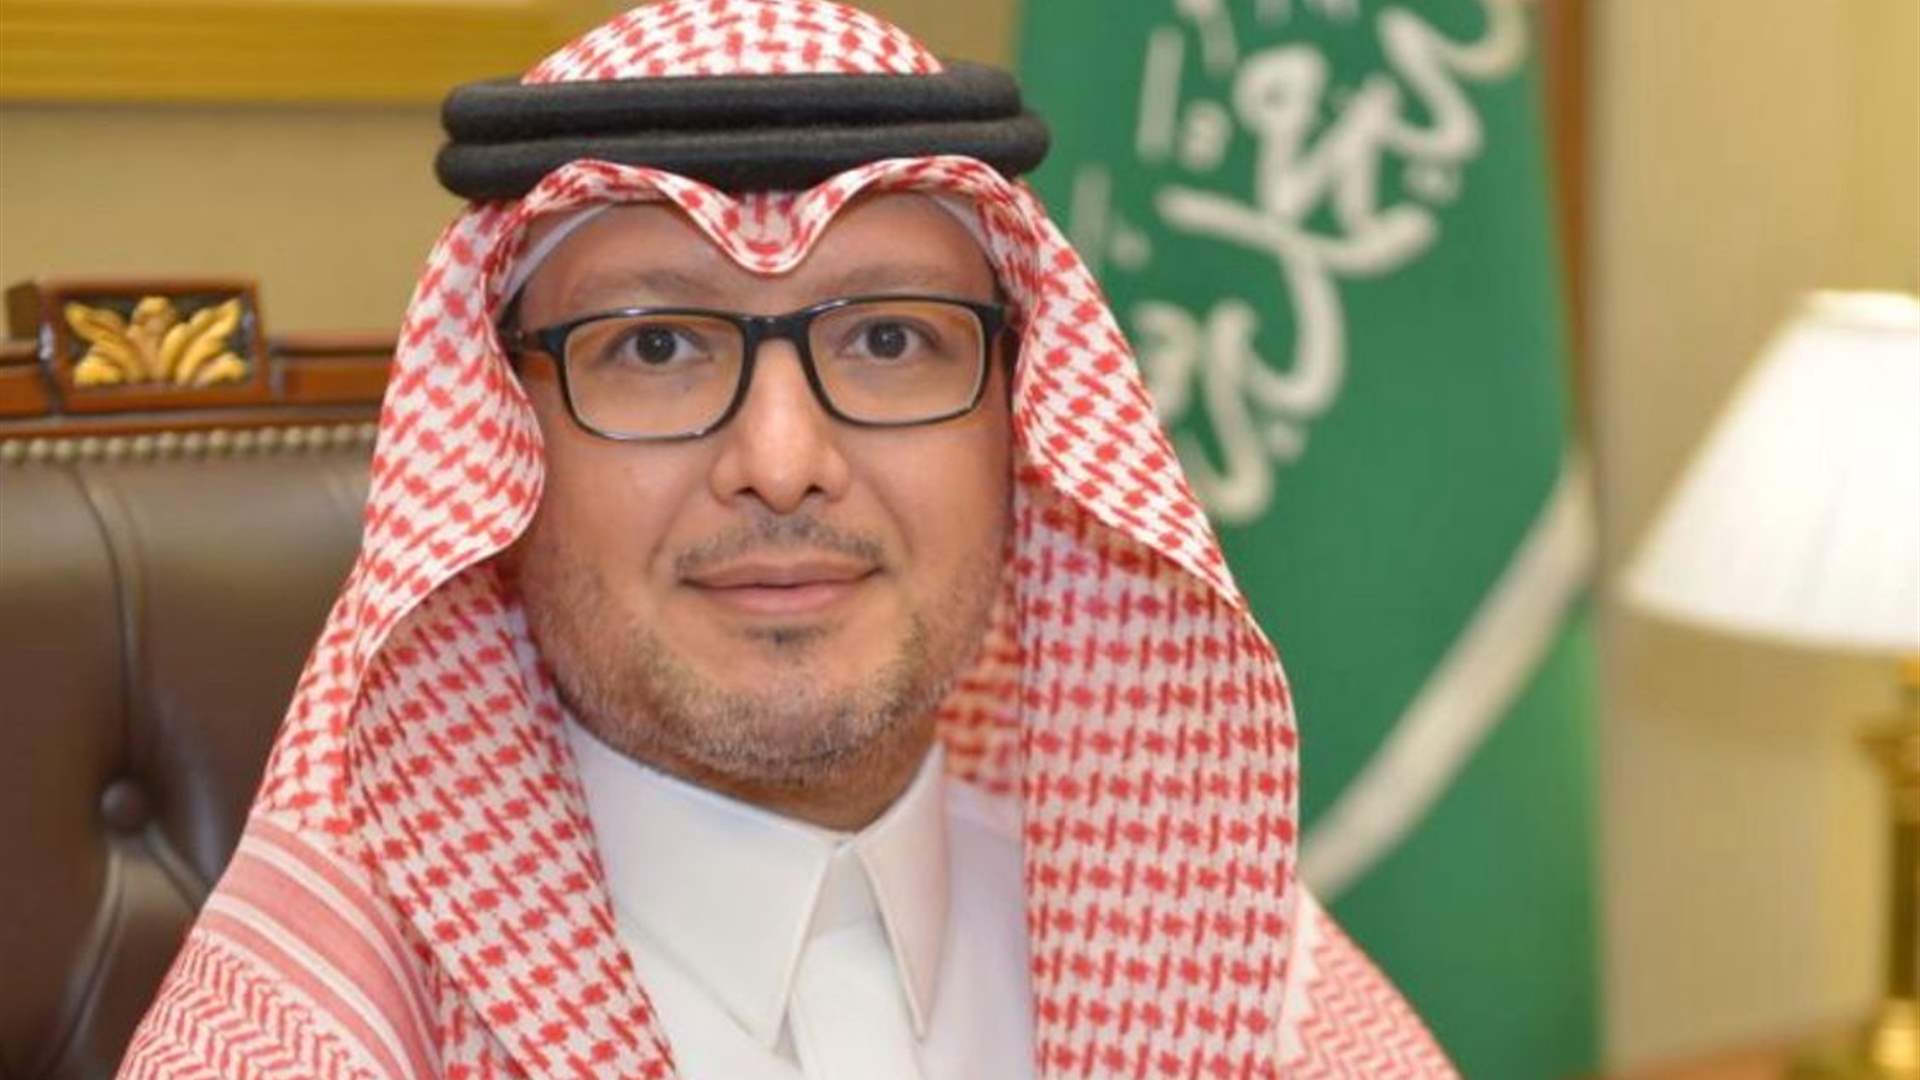 مصادر الجديد: السفير السعودي يتغيّب عن إجتماعات "الخماسية" بسبب وعكة صحية عابرة